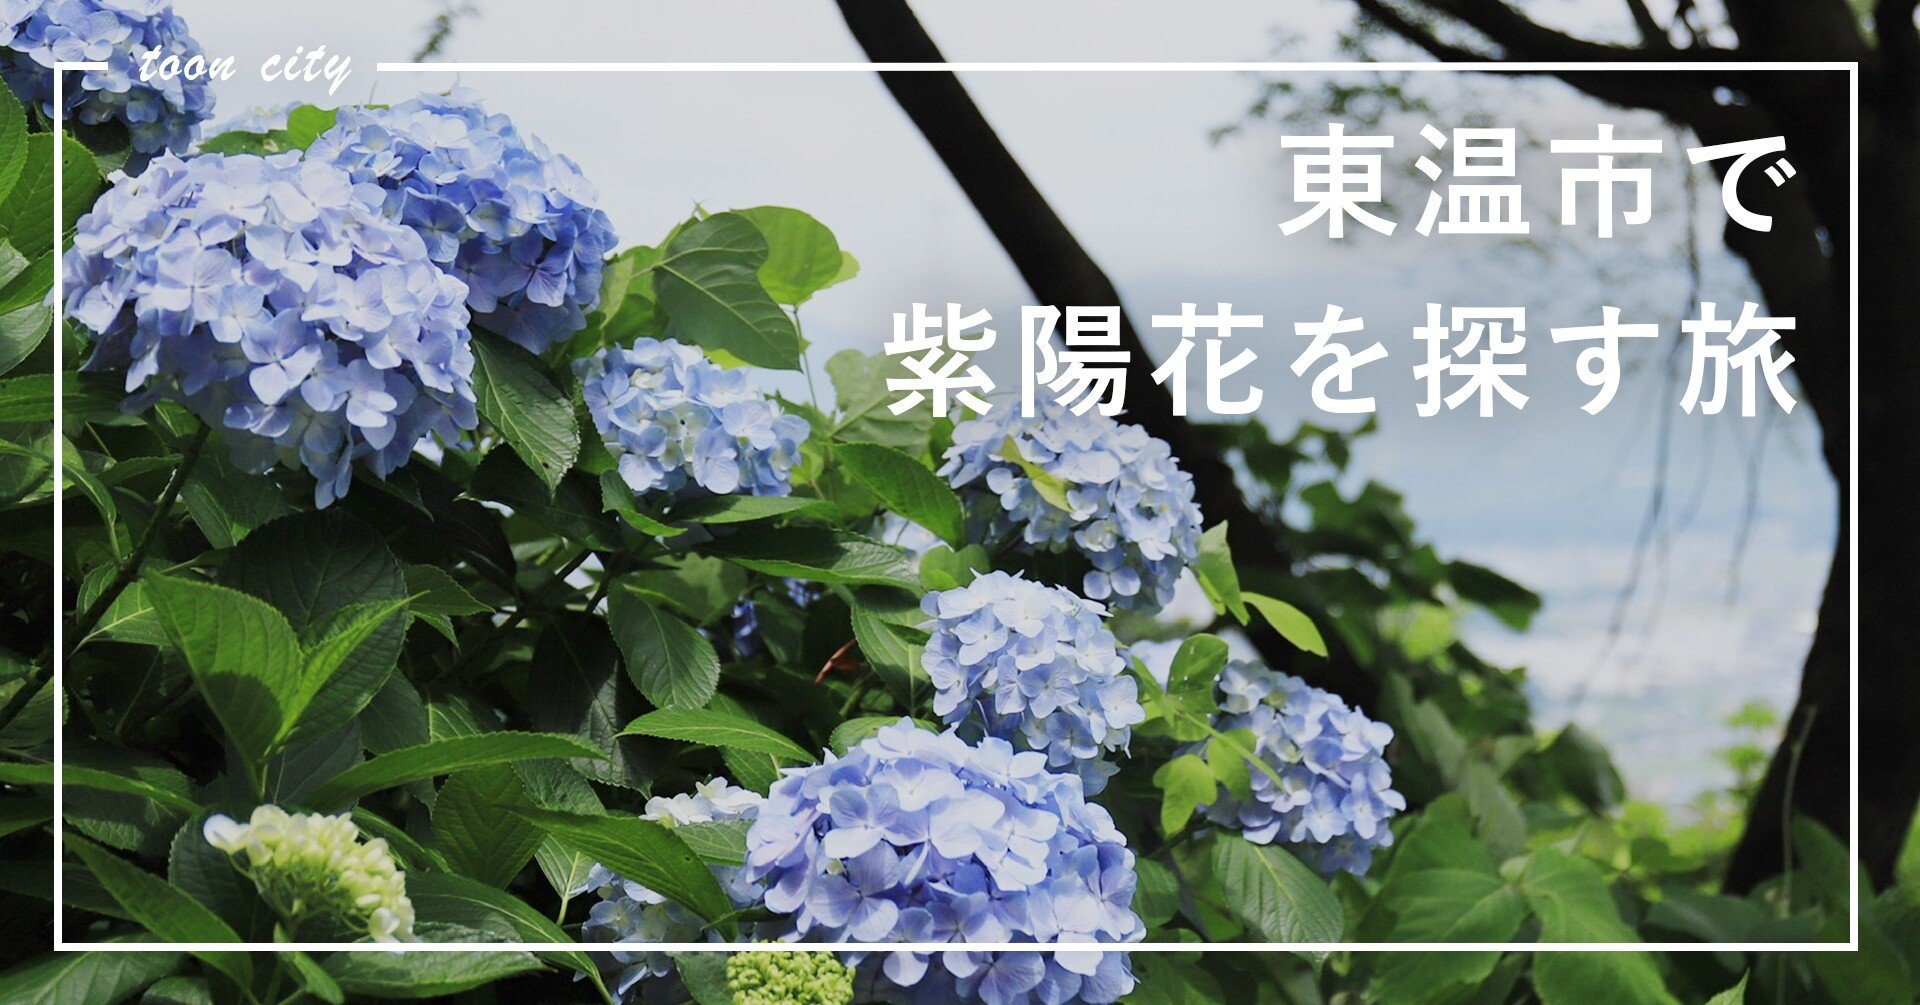 紫陽花を探す旅に出ました 東温市公式note 愛媛県